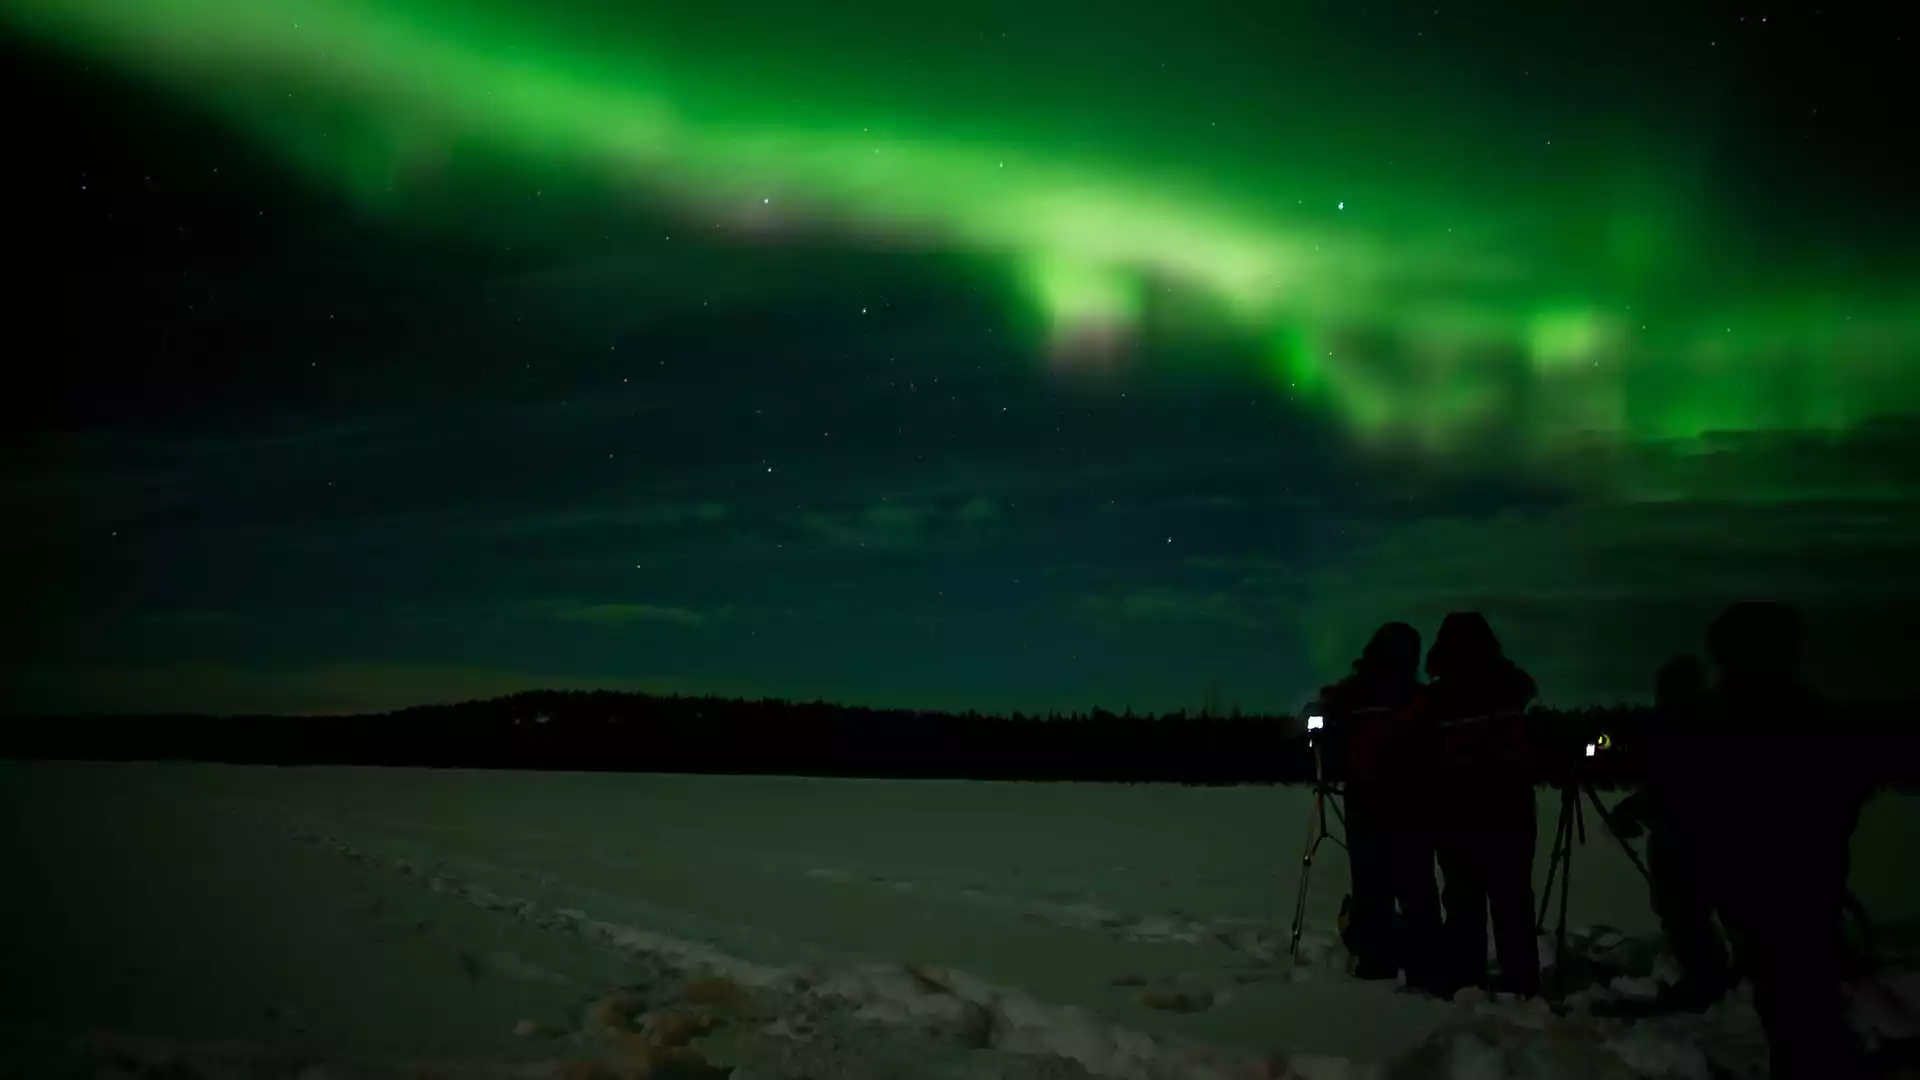 Laatste volle dag en noorderlichtjacht in Lapland